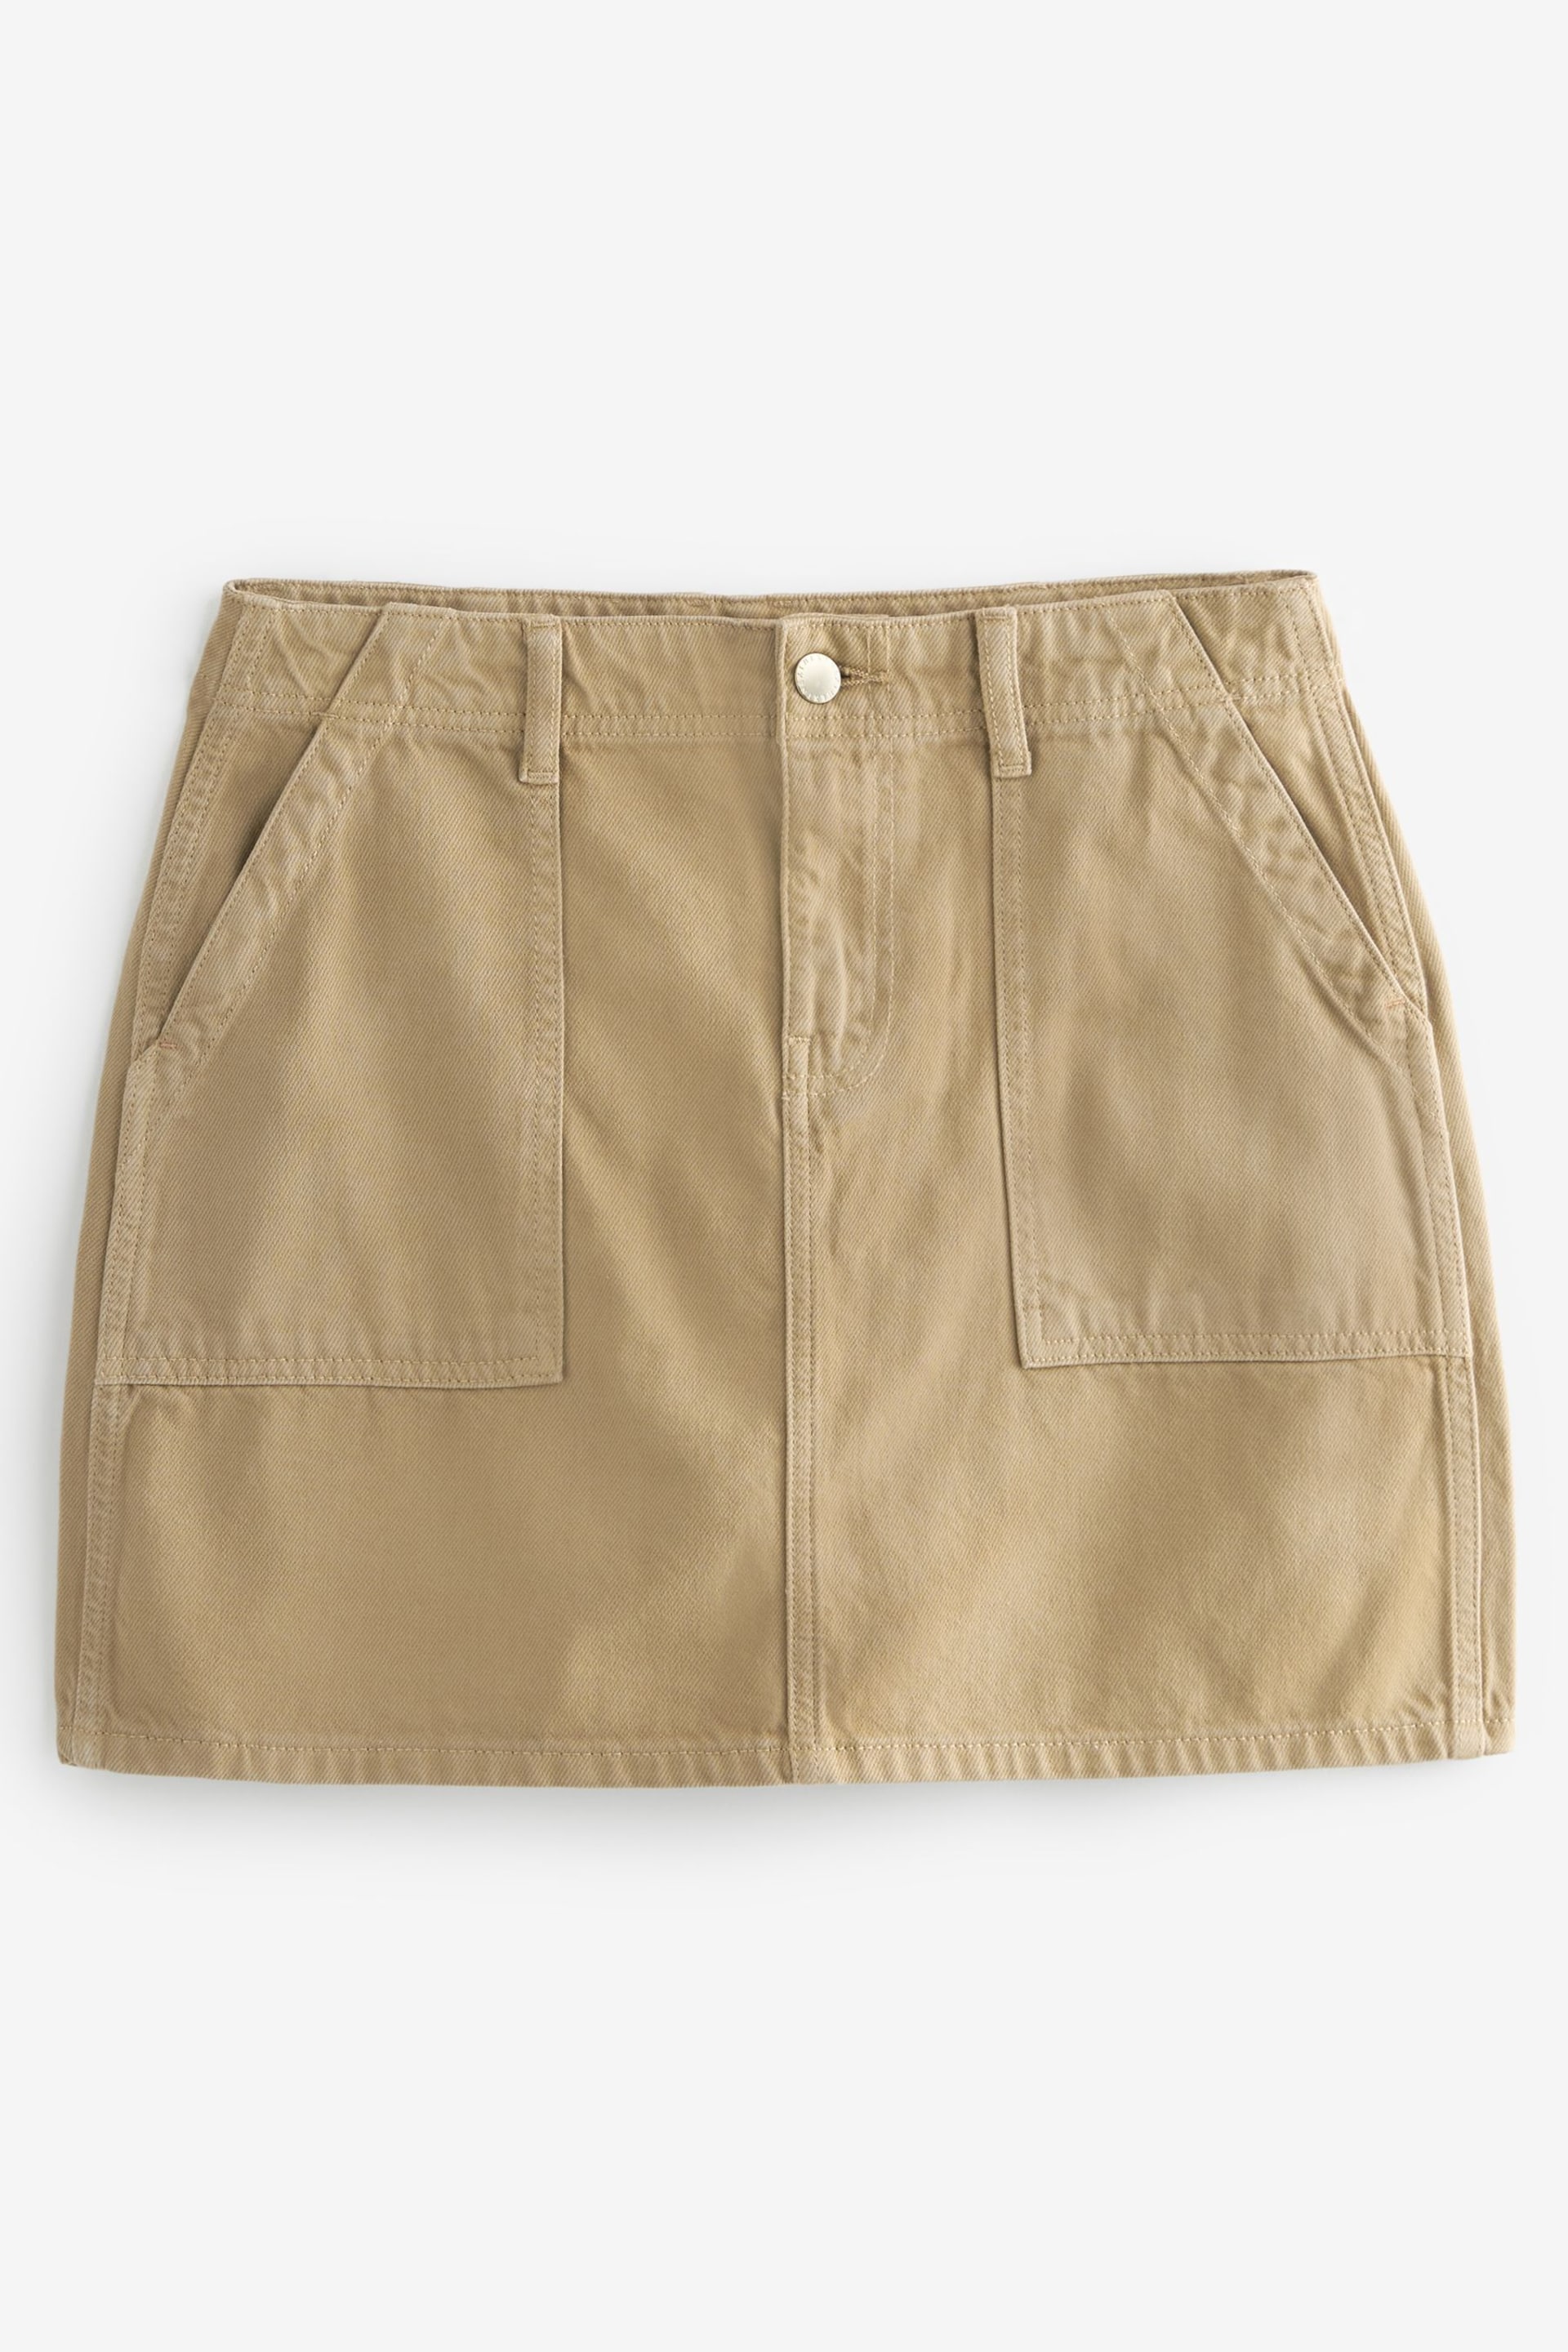 Sand Cargo Denim Mini Skirt - Image 6 of 6